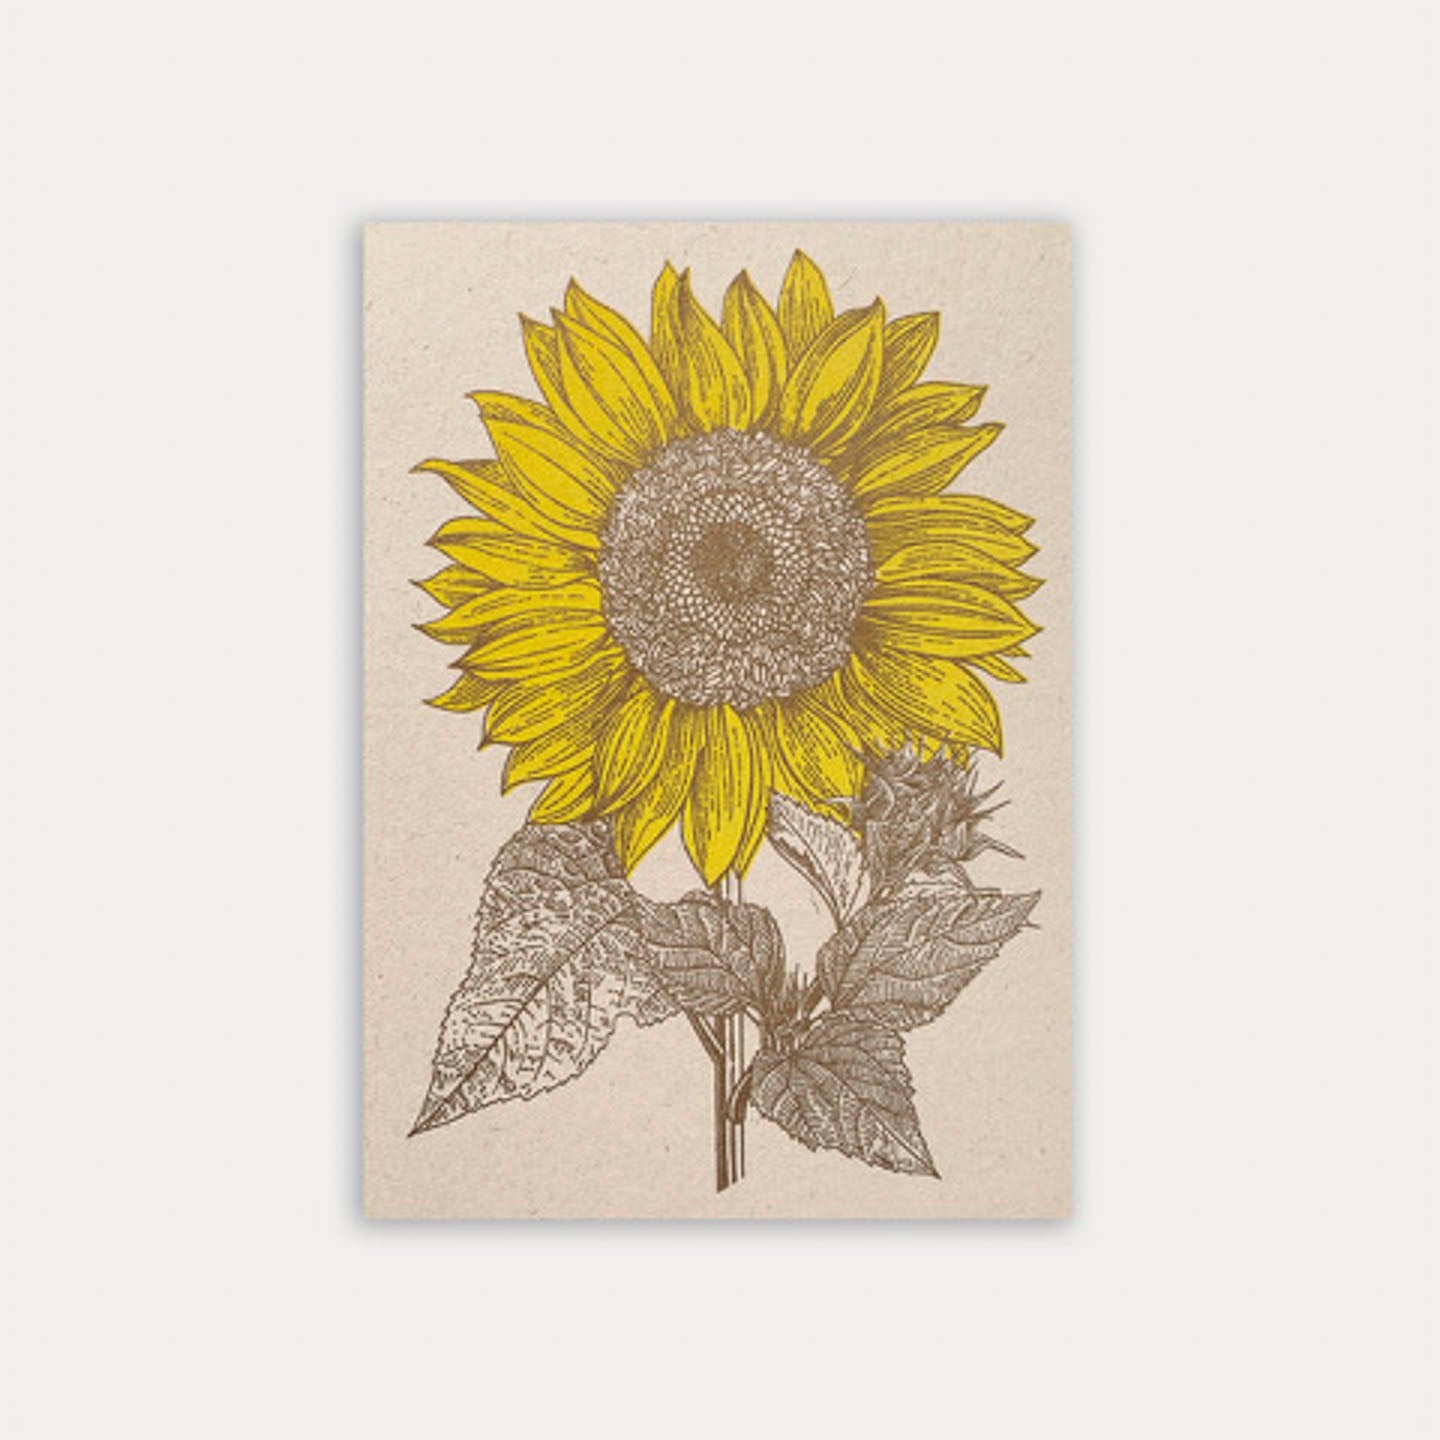 Große Sonnenblume in Gelb, Blätter und Kerne in Gold als Risodruck auf NaturpapierTogethery Karte Postkarte Risographie Riso Druck Sonnenblume Blume